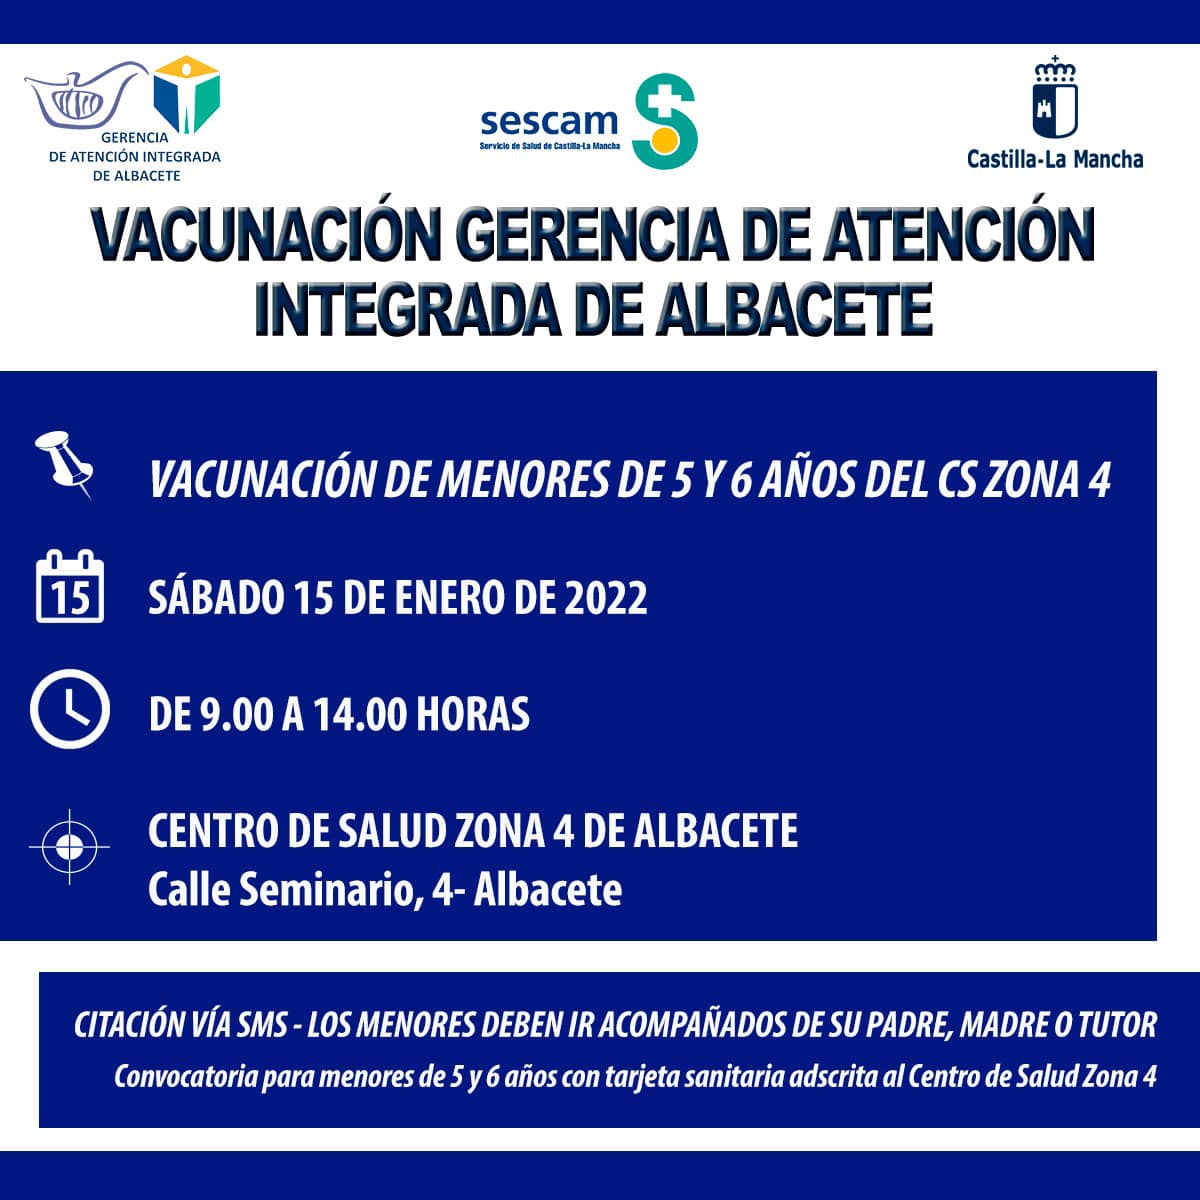 Información sobre la vacunación a niños de 5 y 6 años pertenecientes al Centro de Salud Zona 4 de Albacete / Imagen: SESCAM